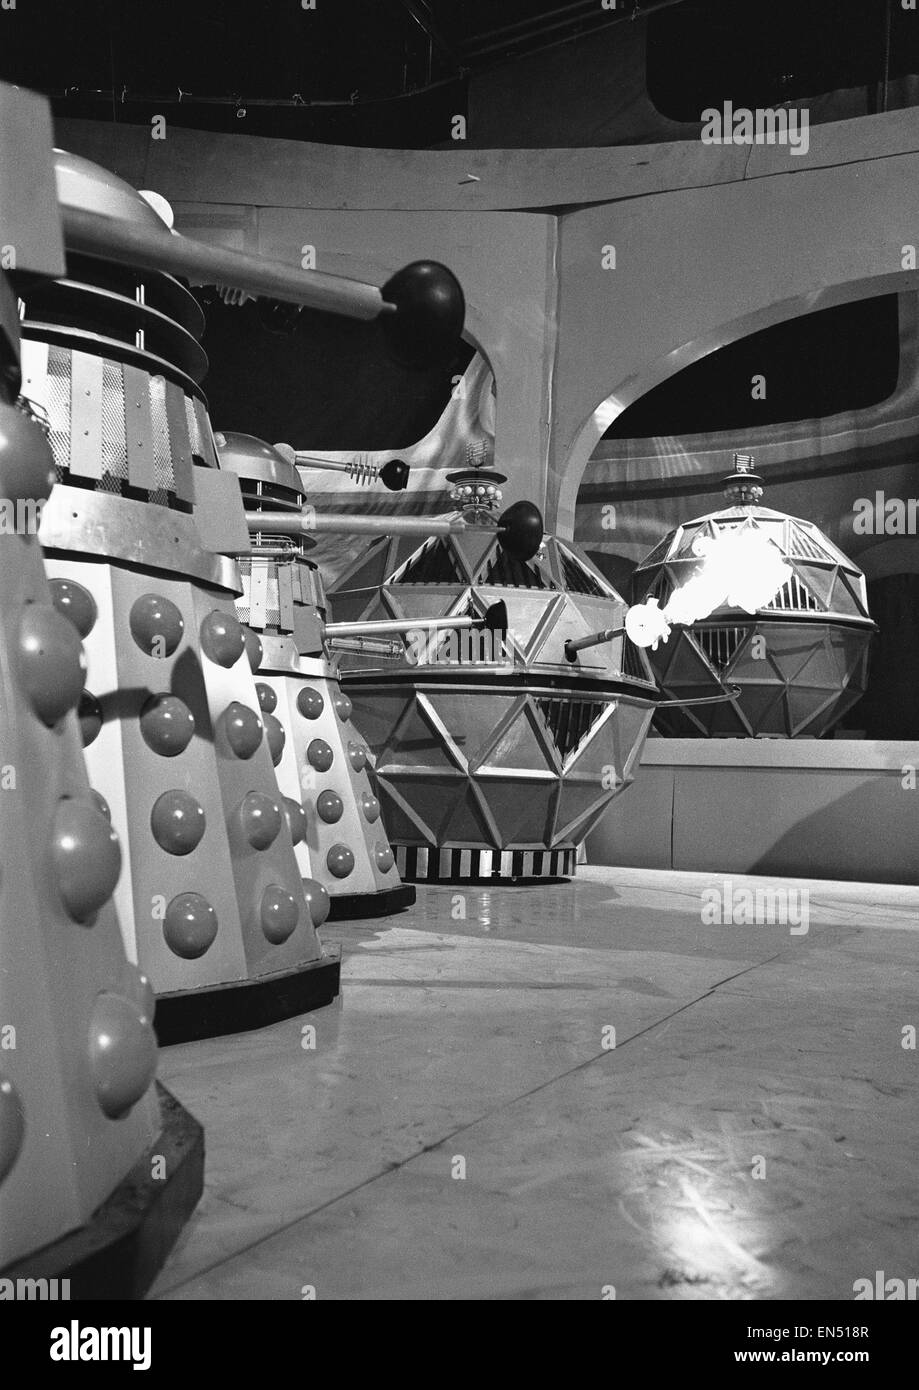 Una scena dal Dr Who serie tv, la storia è chiamato "The Chase" La scena mostra un confronto tra la Mechanoids grandi robot sferico originariamente costruito da esseri umani al fine di aiutare a colonizzare nuovi mondi e i loro nemici giurati Daleks l. La confrontati Foto Stock